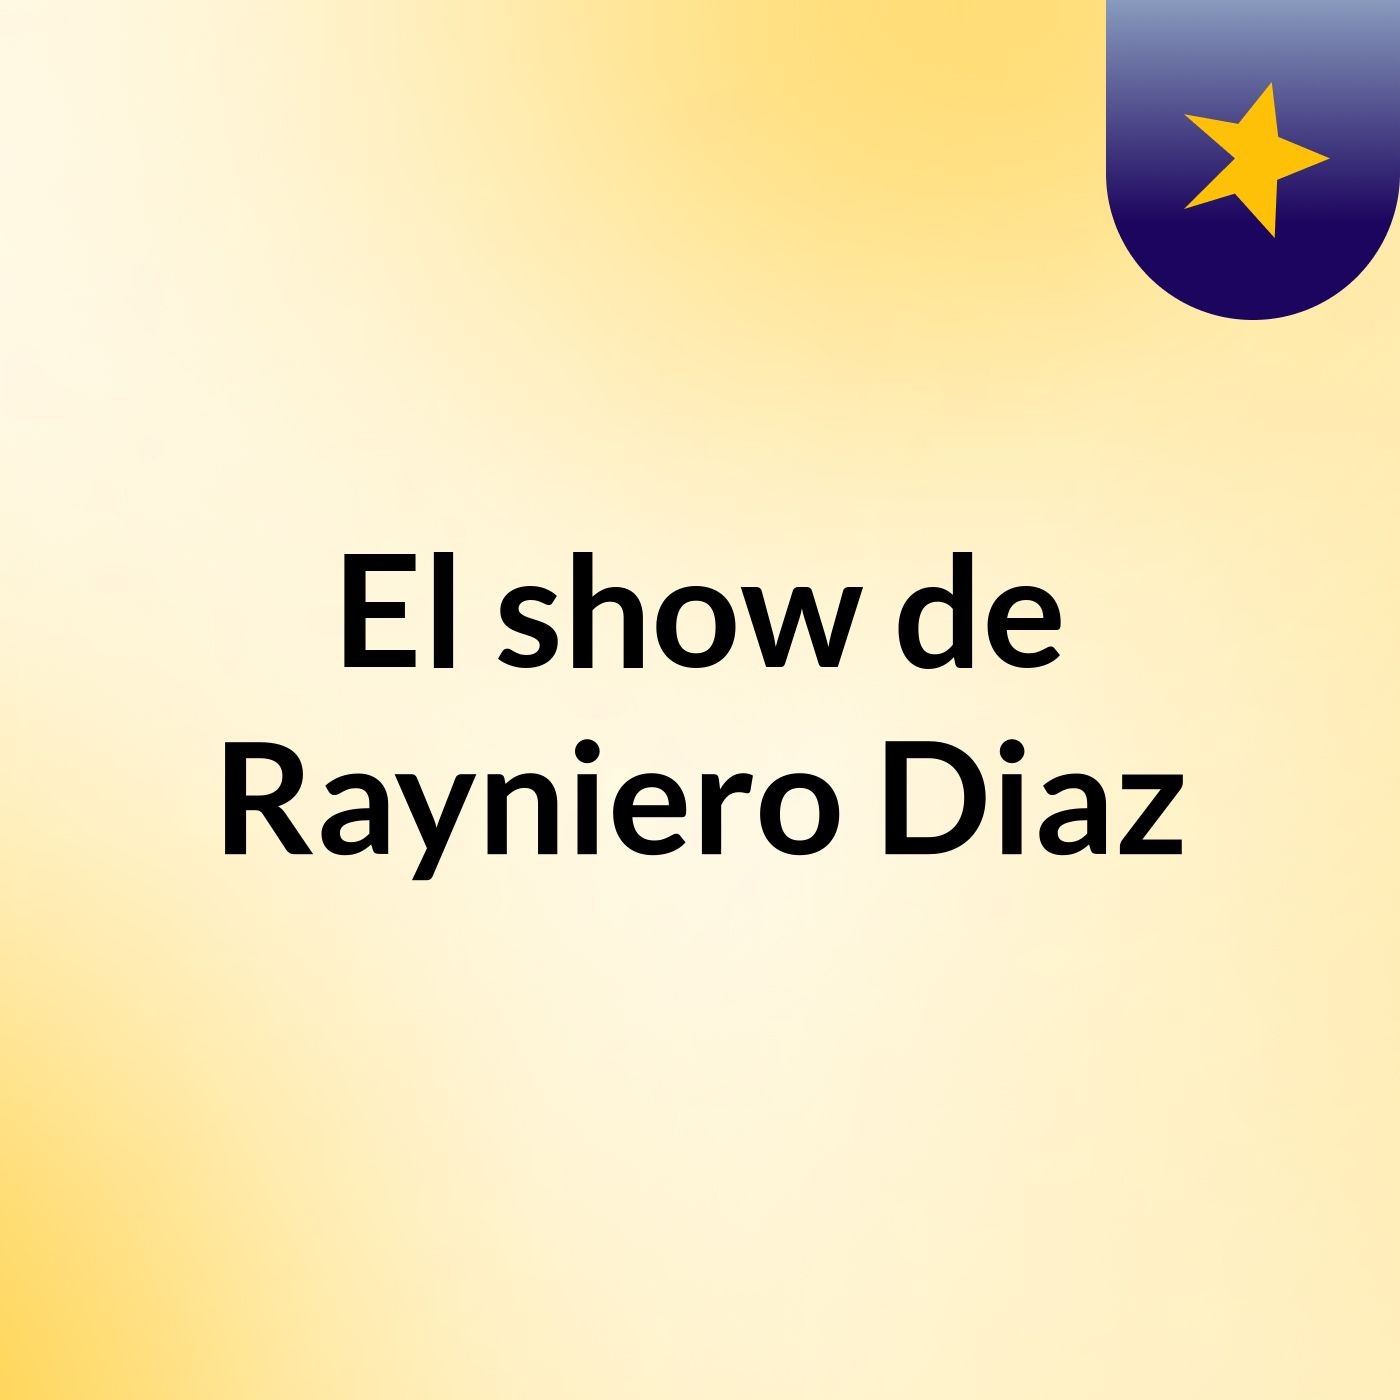 El show de Rayniero Diaz